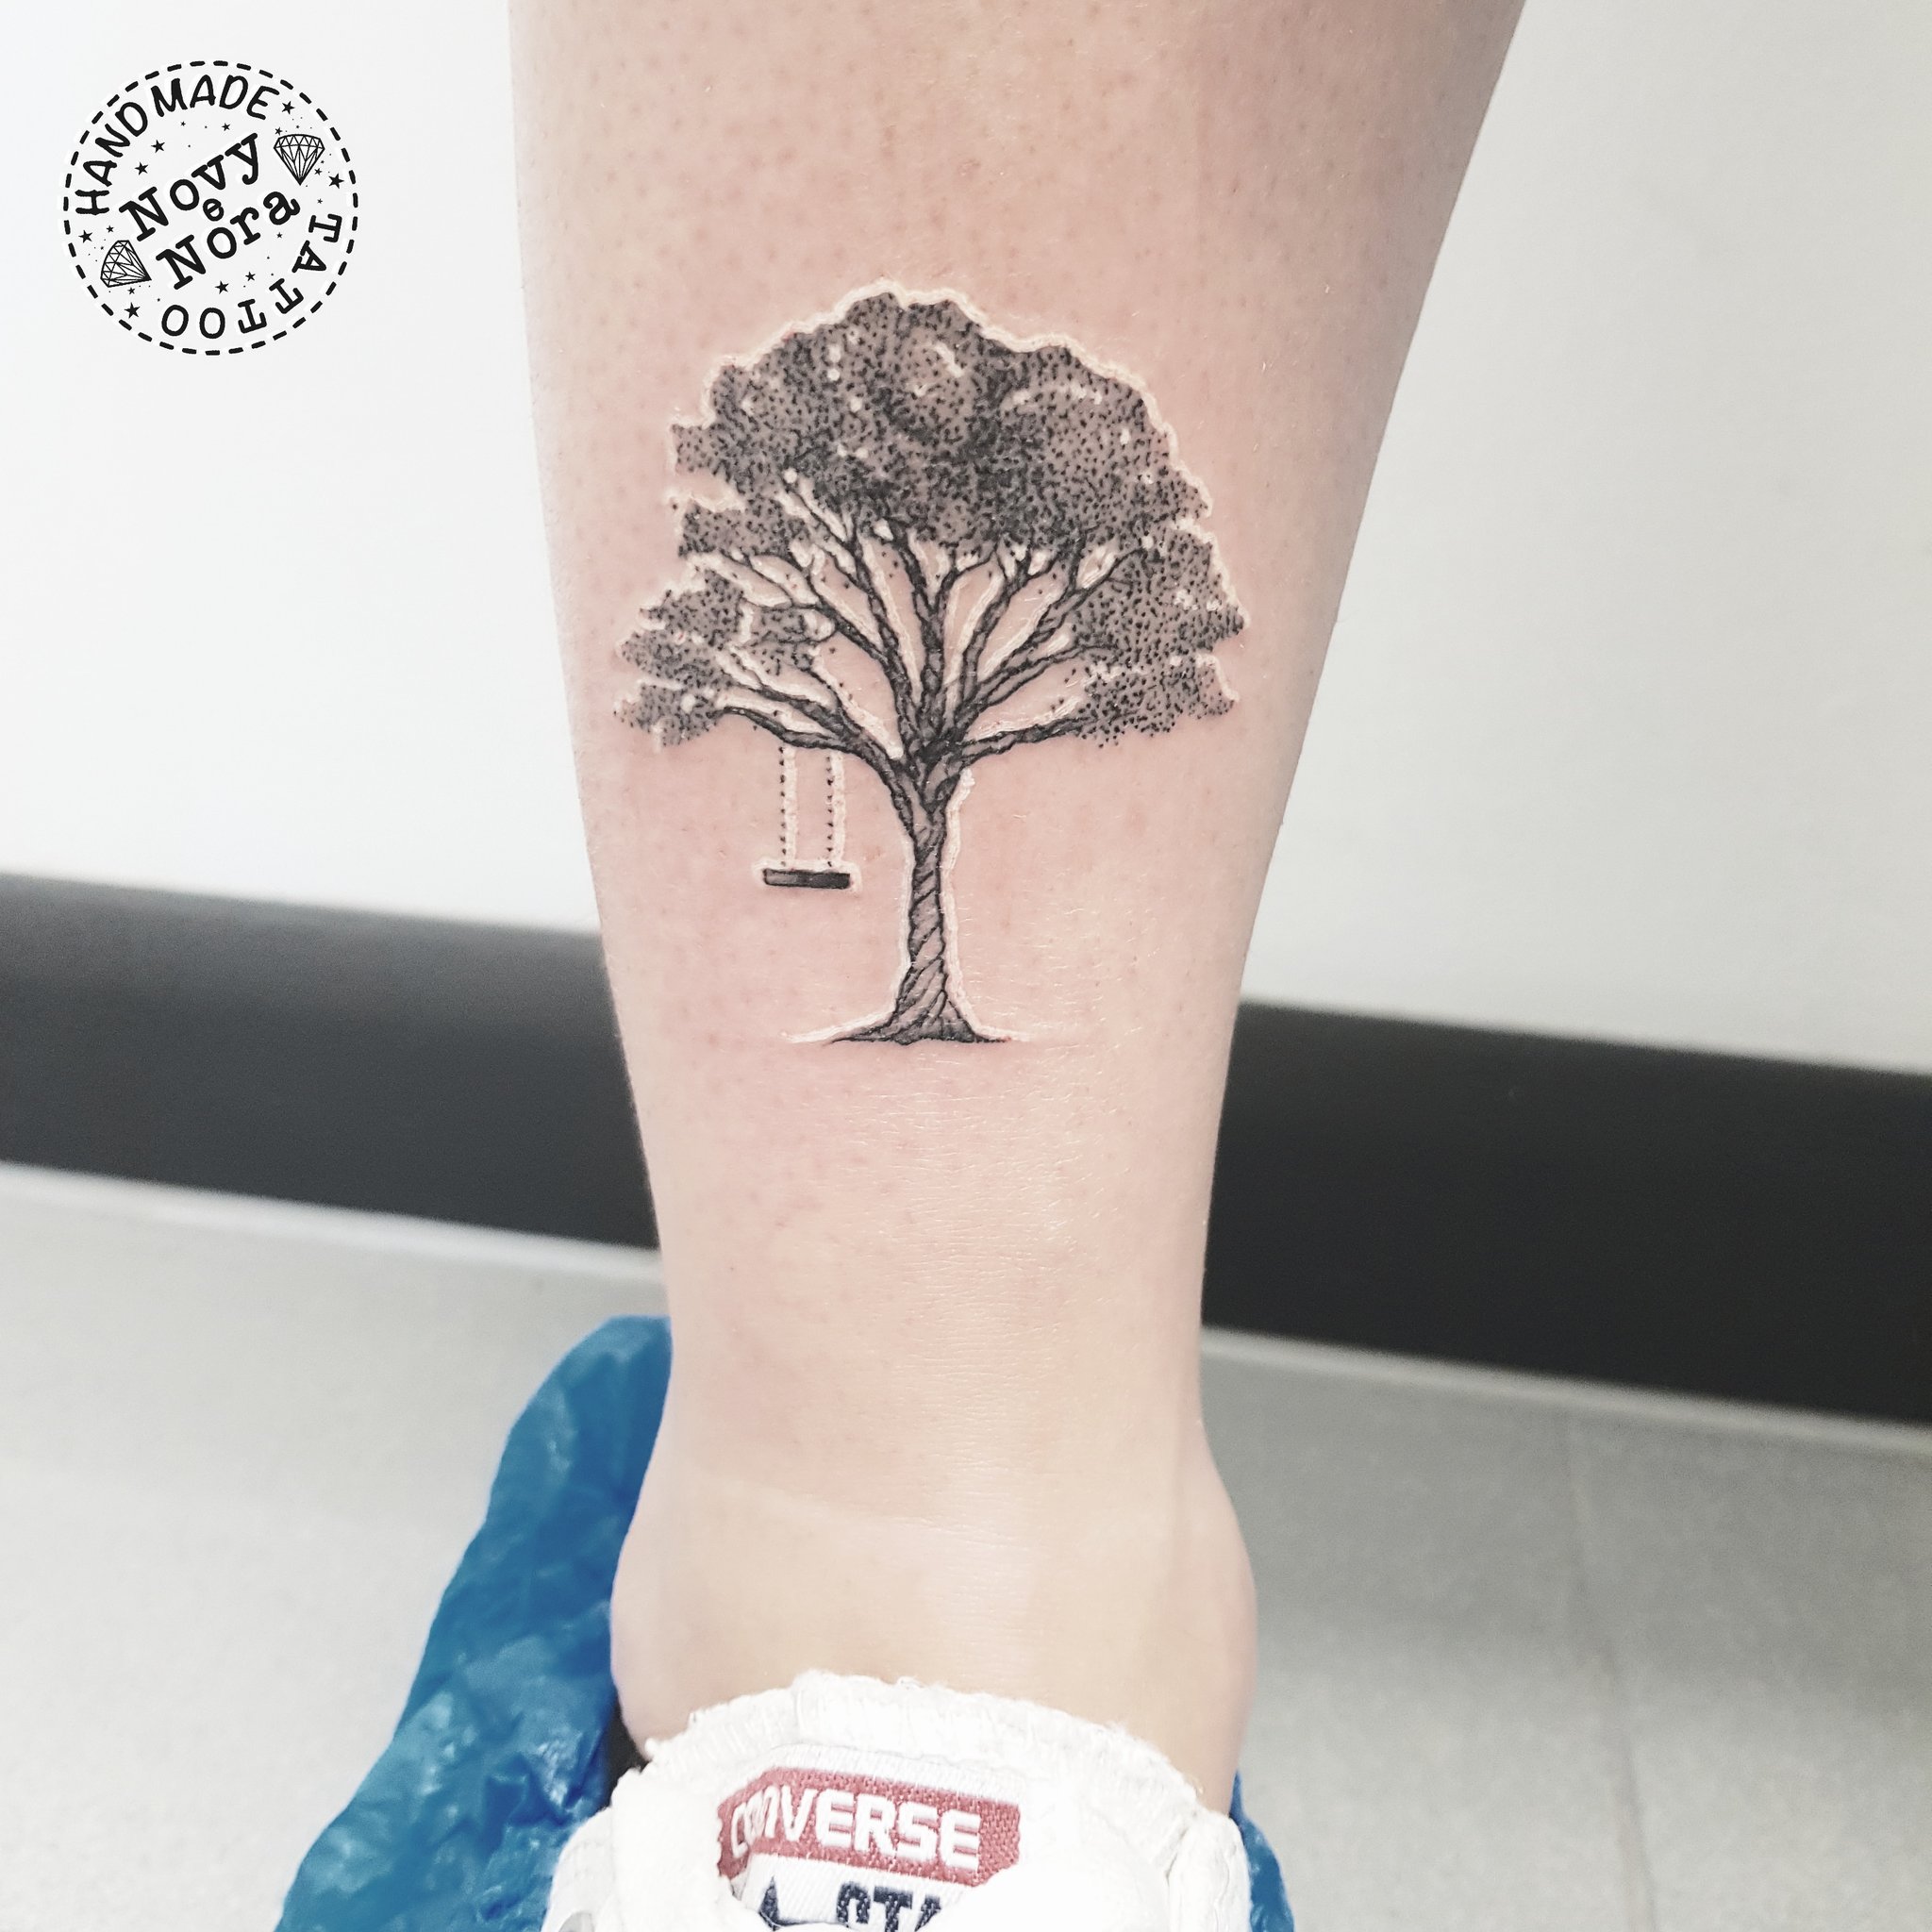 Tree Tiger Tattoo - Best Tattoo Ideas Gallery